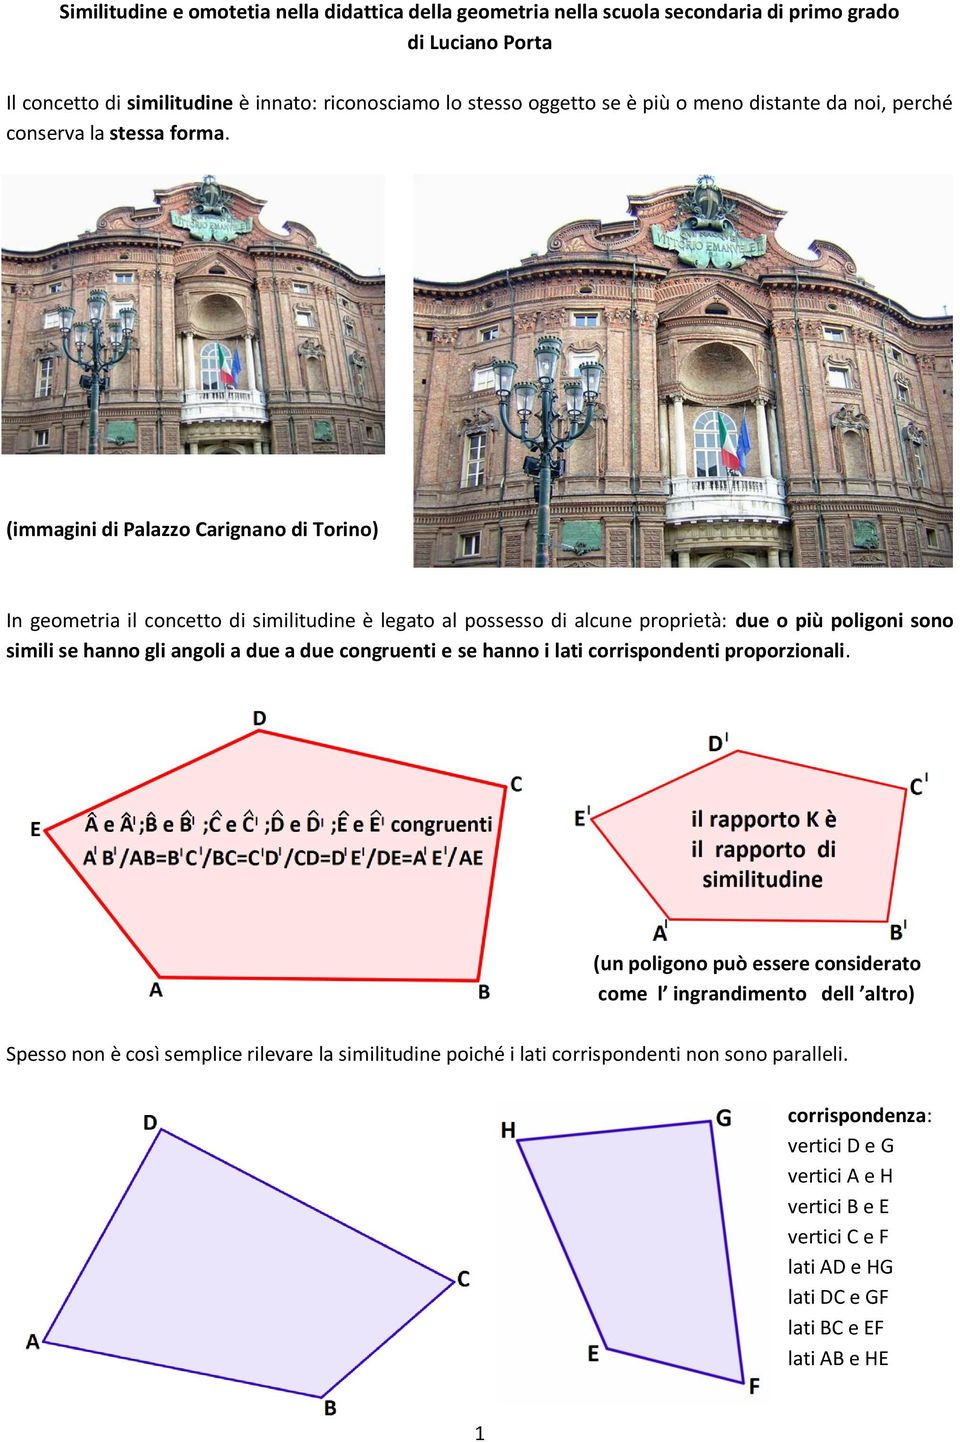 (immagini di Palazzo Carignano di Torino) In geometria il concetto di similitudine è legato al possesso di alcune proprietà: due o più poligoni sono simili se hanno gli angoli a due a due